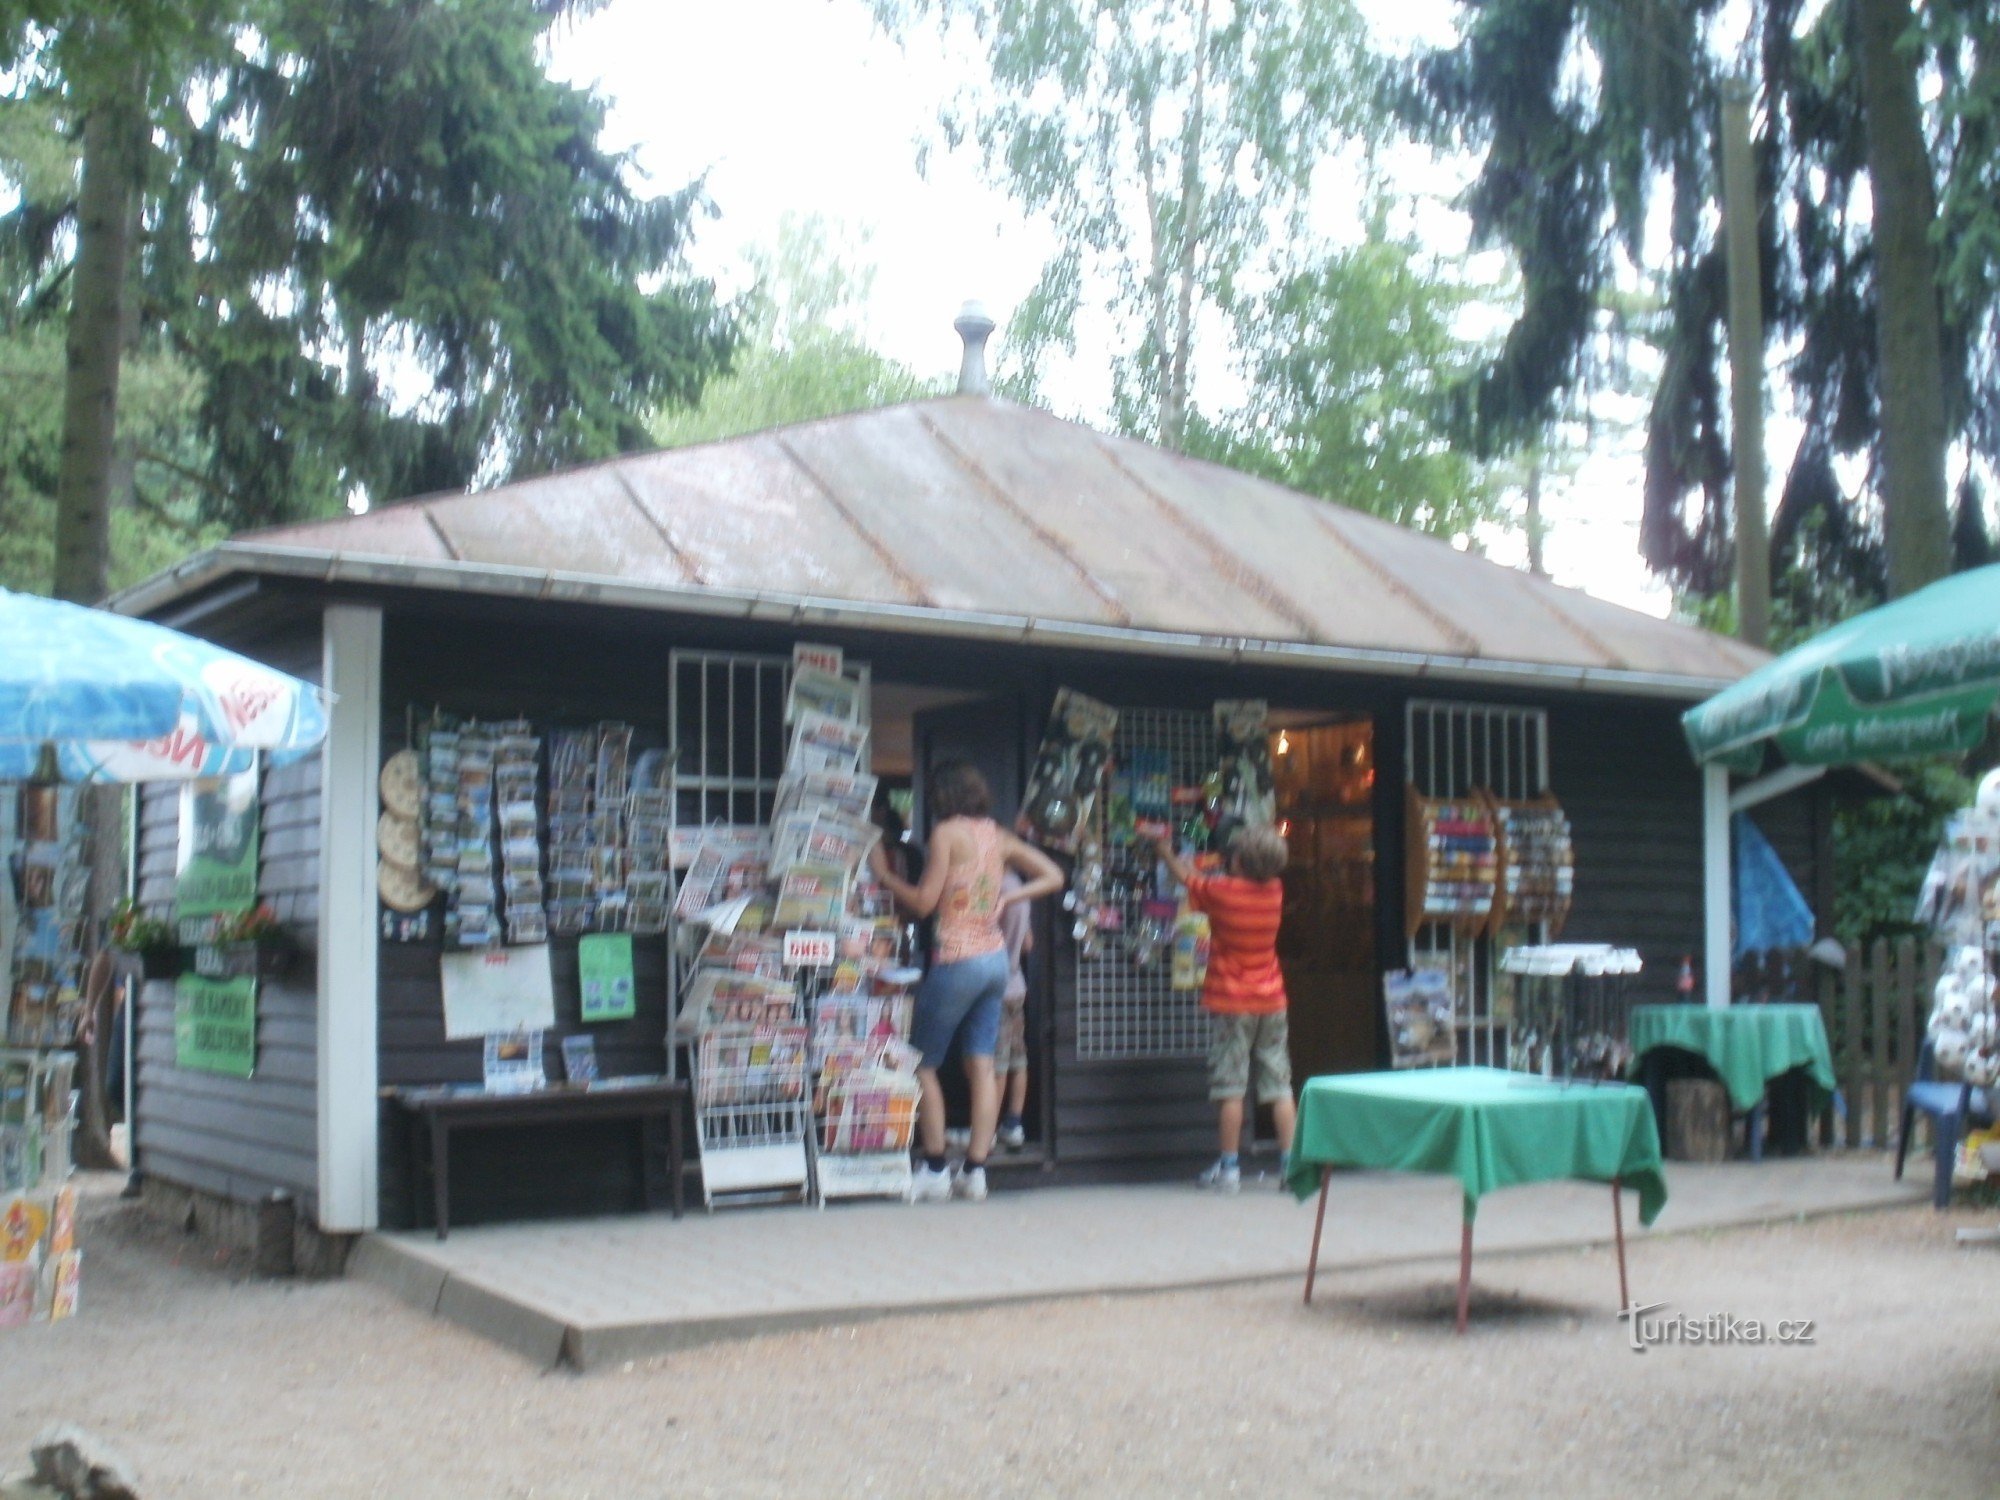 Prachov - centro turístico Bohemian Paradise, centro de informações